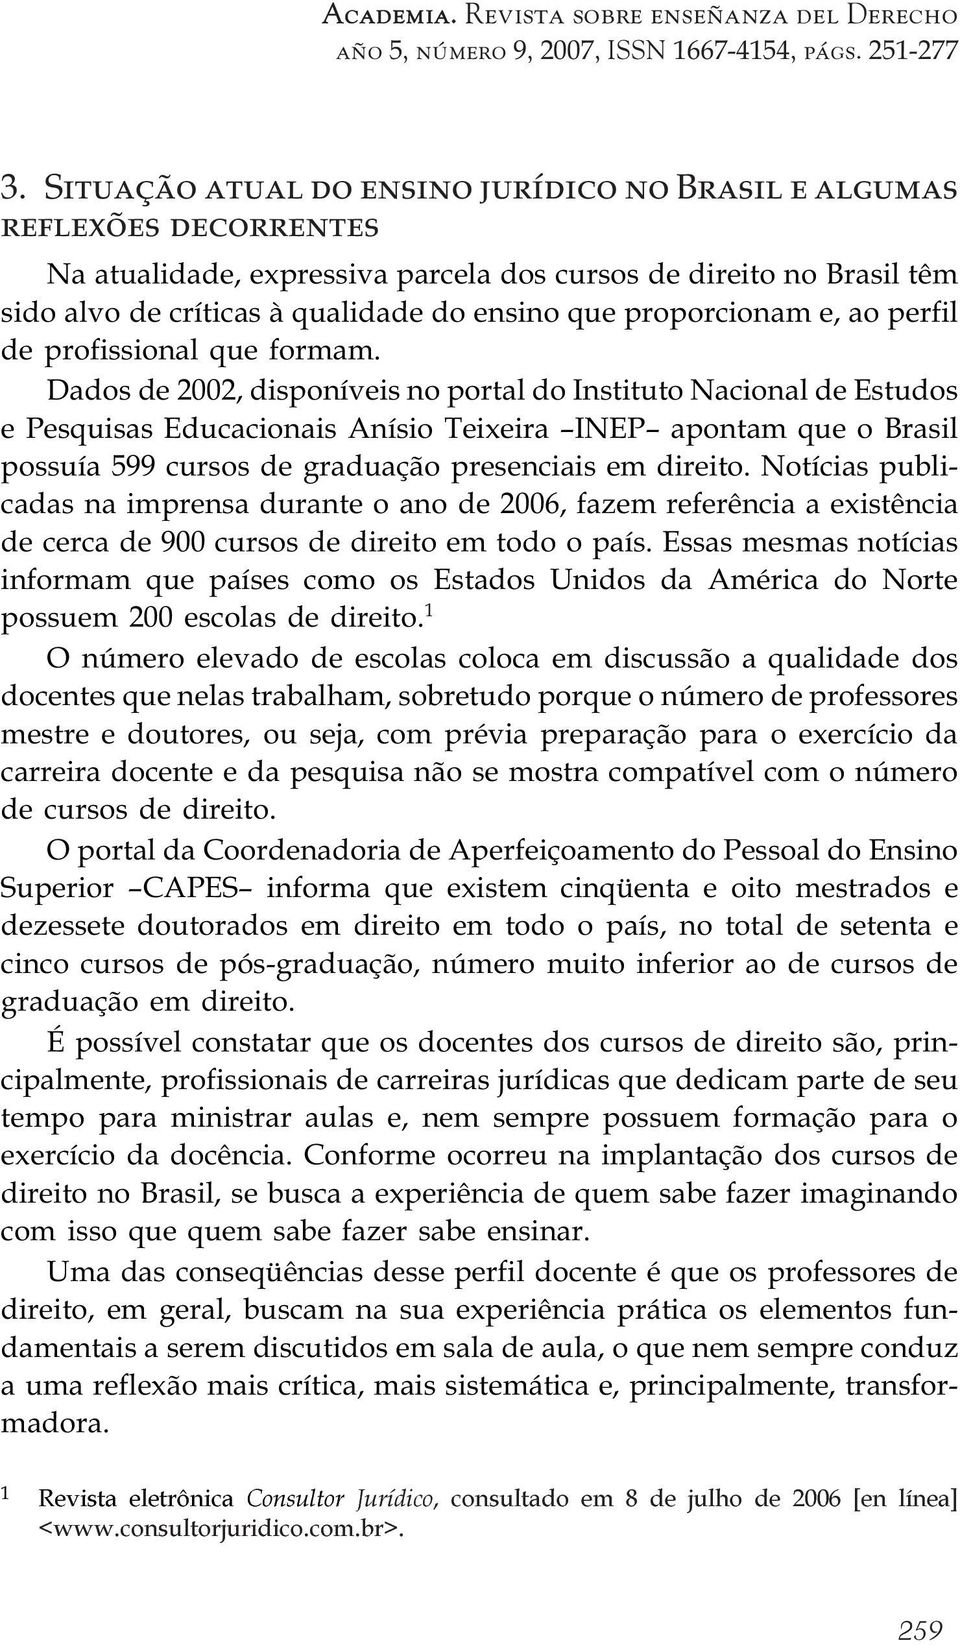 Dados de 2002, disponíveis no portal do Instituto Nacional de Estudos e Pesquisas Educacionais Anísio Teixeira INEP apontam que o Brasil possuía 599 cursos de graduação presenciais em direito.